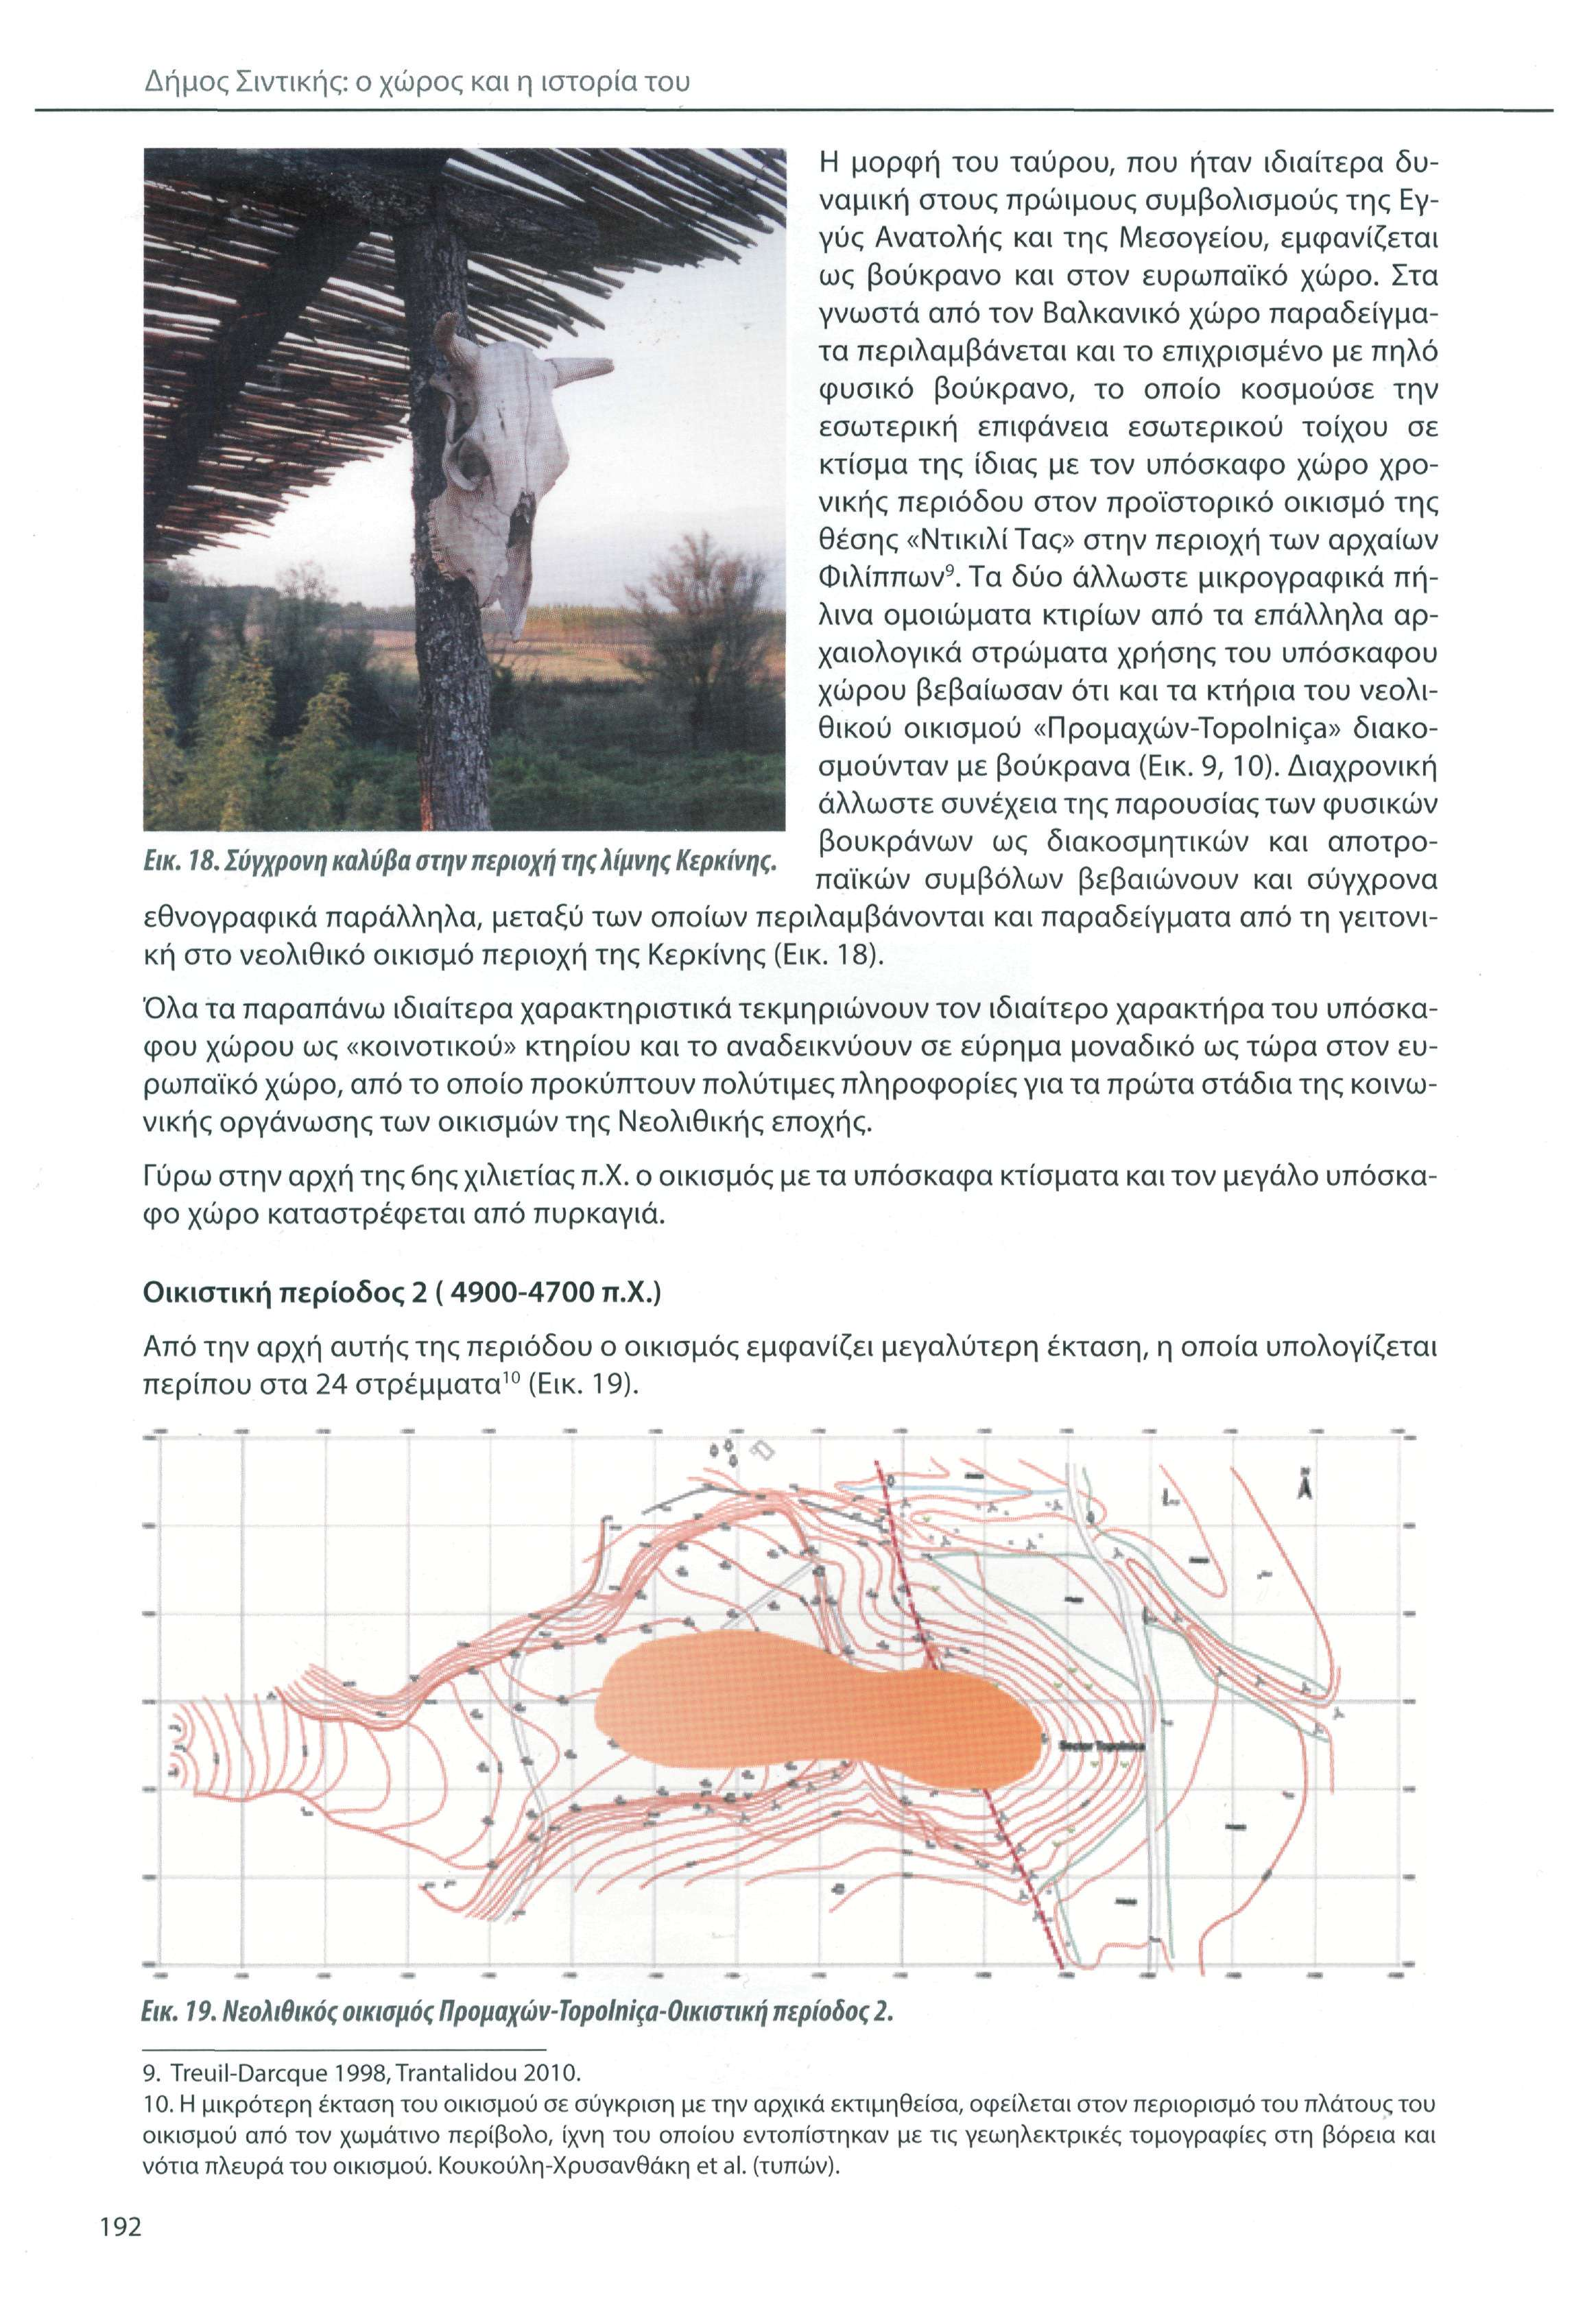 Δήμος Σιντικής: ο χώρος και η ιστορία του Η μορφή του ταύρου, που ήταν ιδιαίτερα δυναμική στους πρώιμους συμβολισμούς της Εγγύς Ανατολής και της Μεσογείου, εμφανίζεται ως βοΰκρανο και στον ευρωπαϊκό